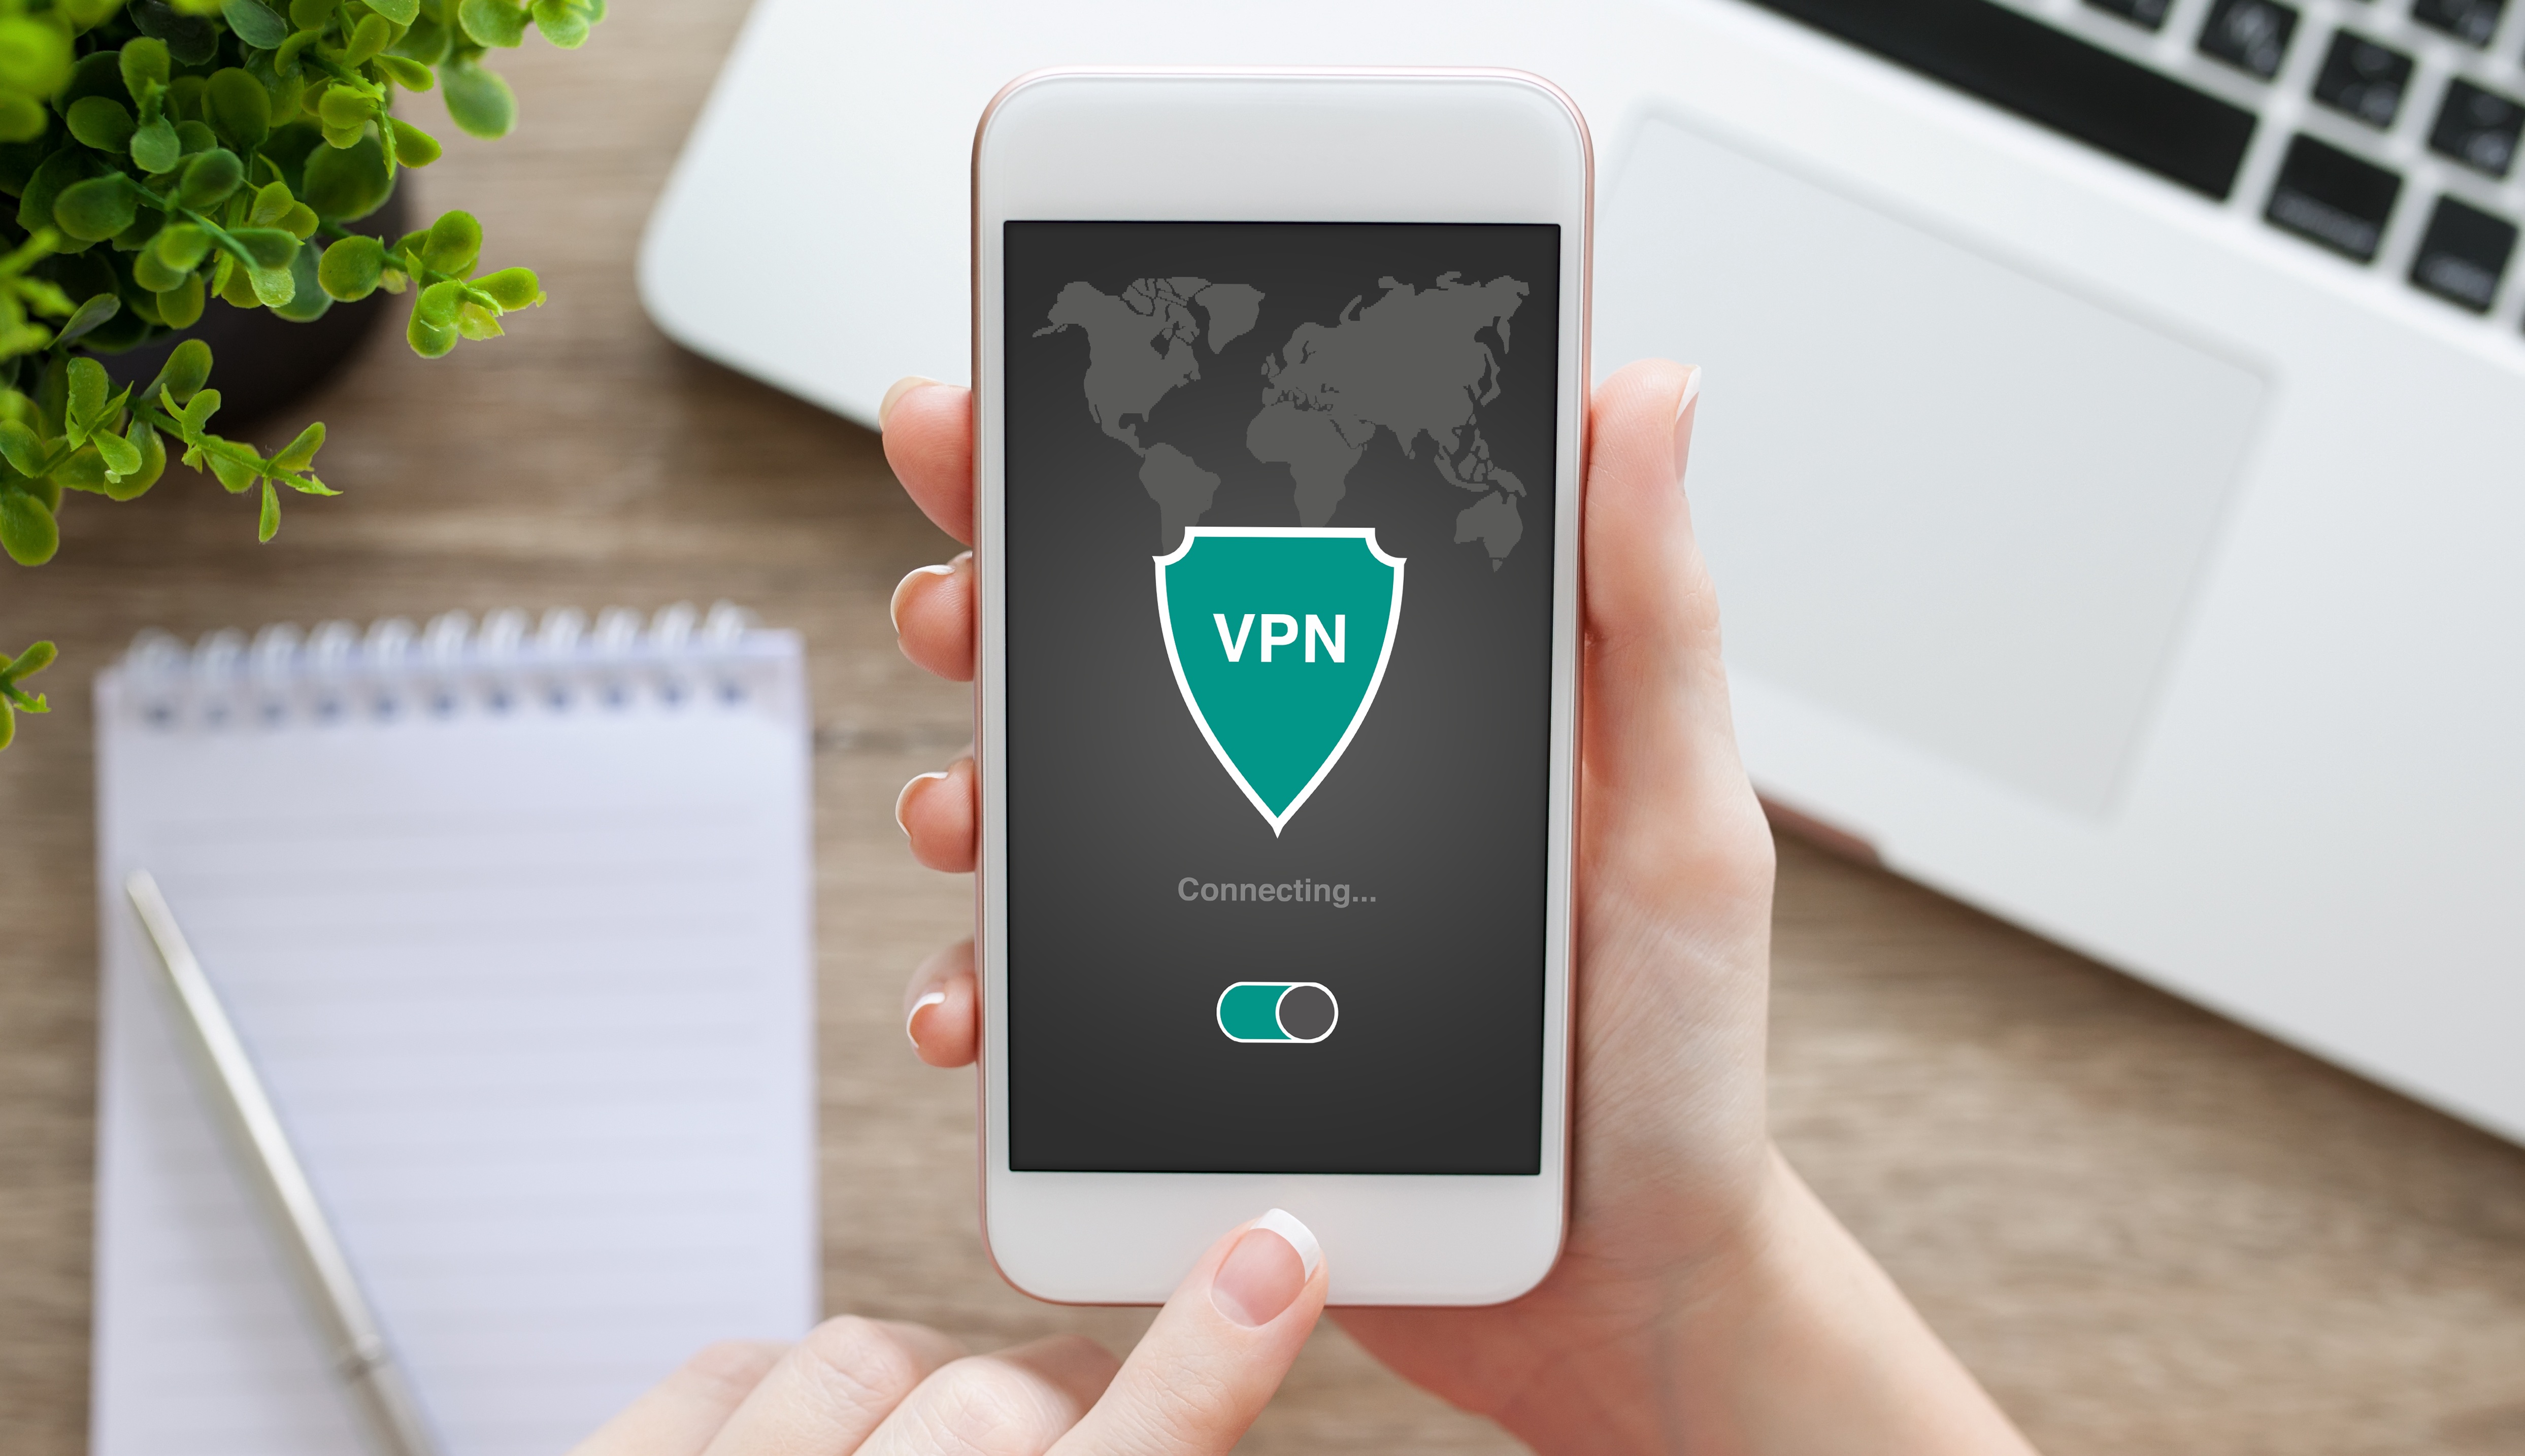 تصویر استوک یک VPN در حال نمایش در آیفون.